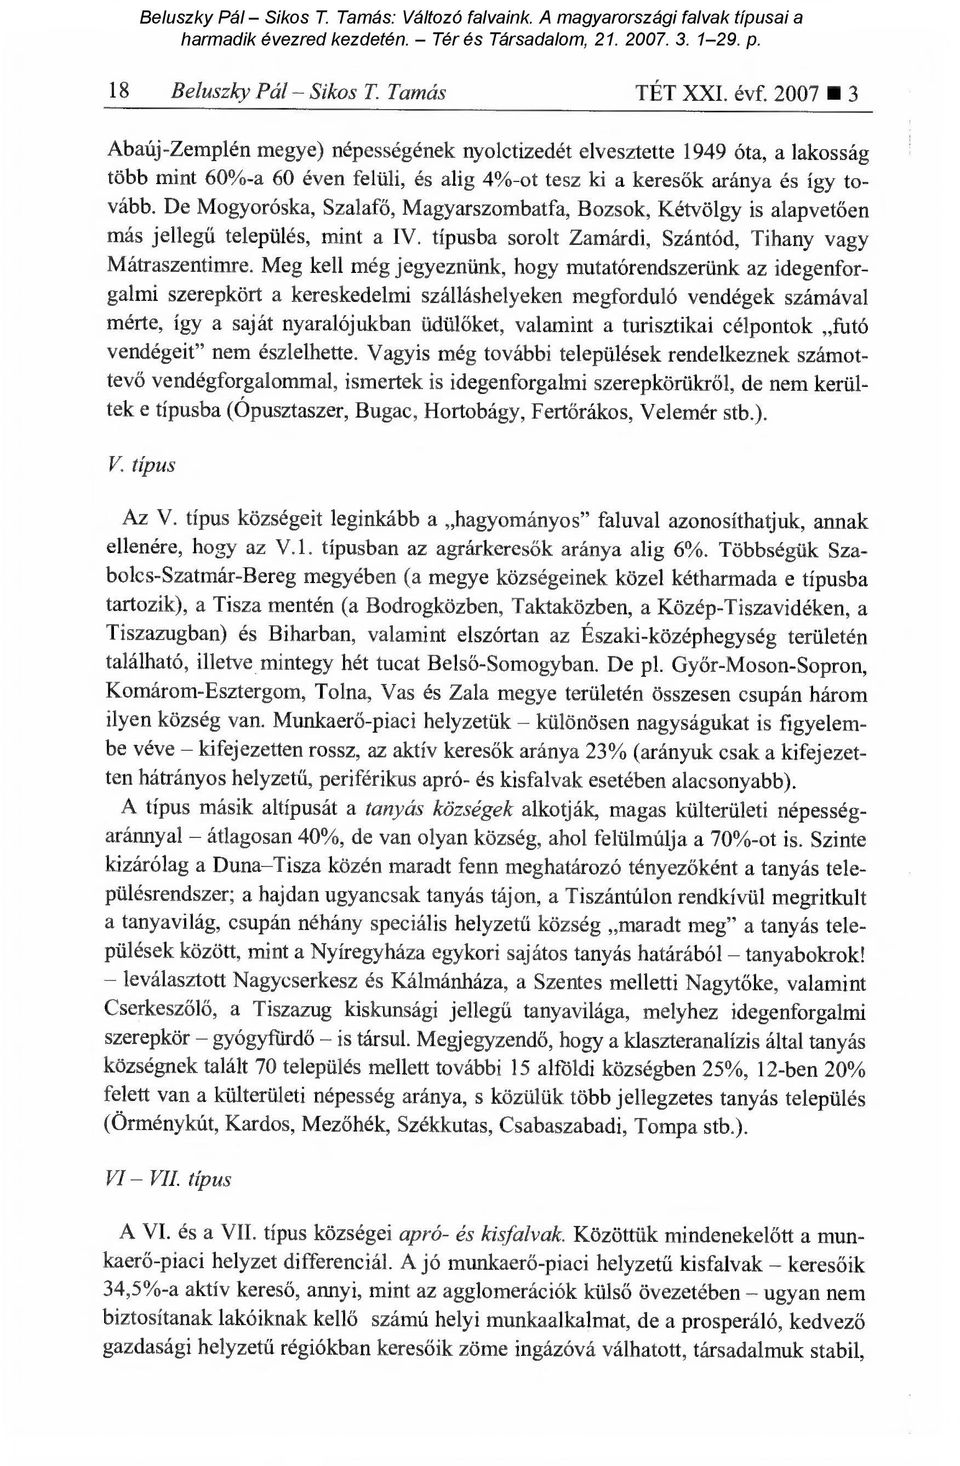 De Mogyoróska, Szalafő, Magyarszombatfa, Bozsok, Kétvölgy is alapvet ően más jellegű település, mint a IV. típusba sorolt Zamárdi, Szántód, Tihany vagy Mátraszentimre.